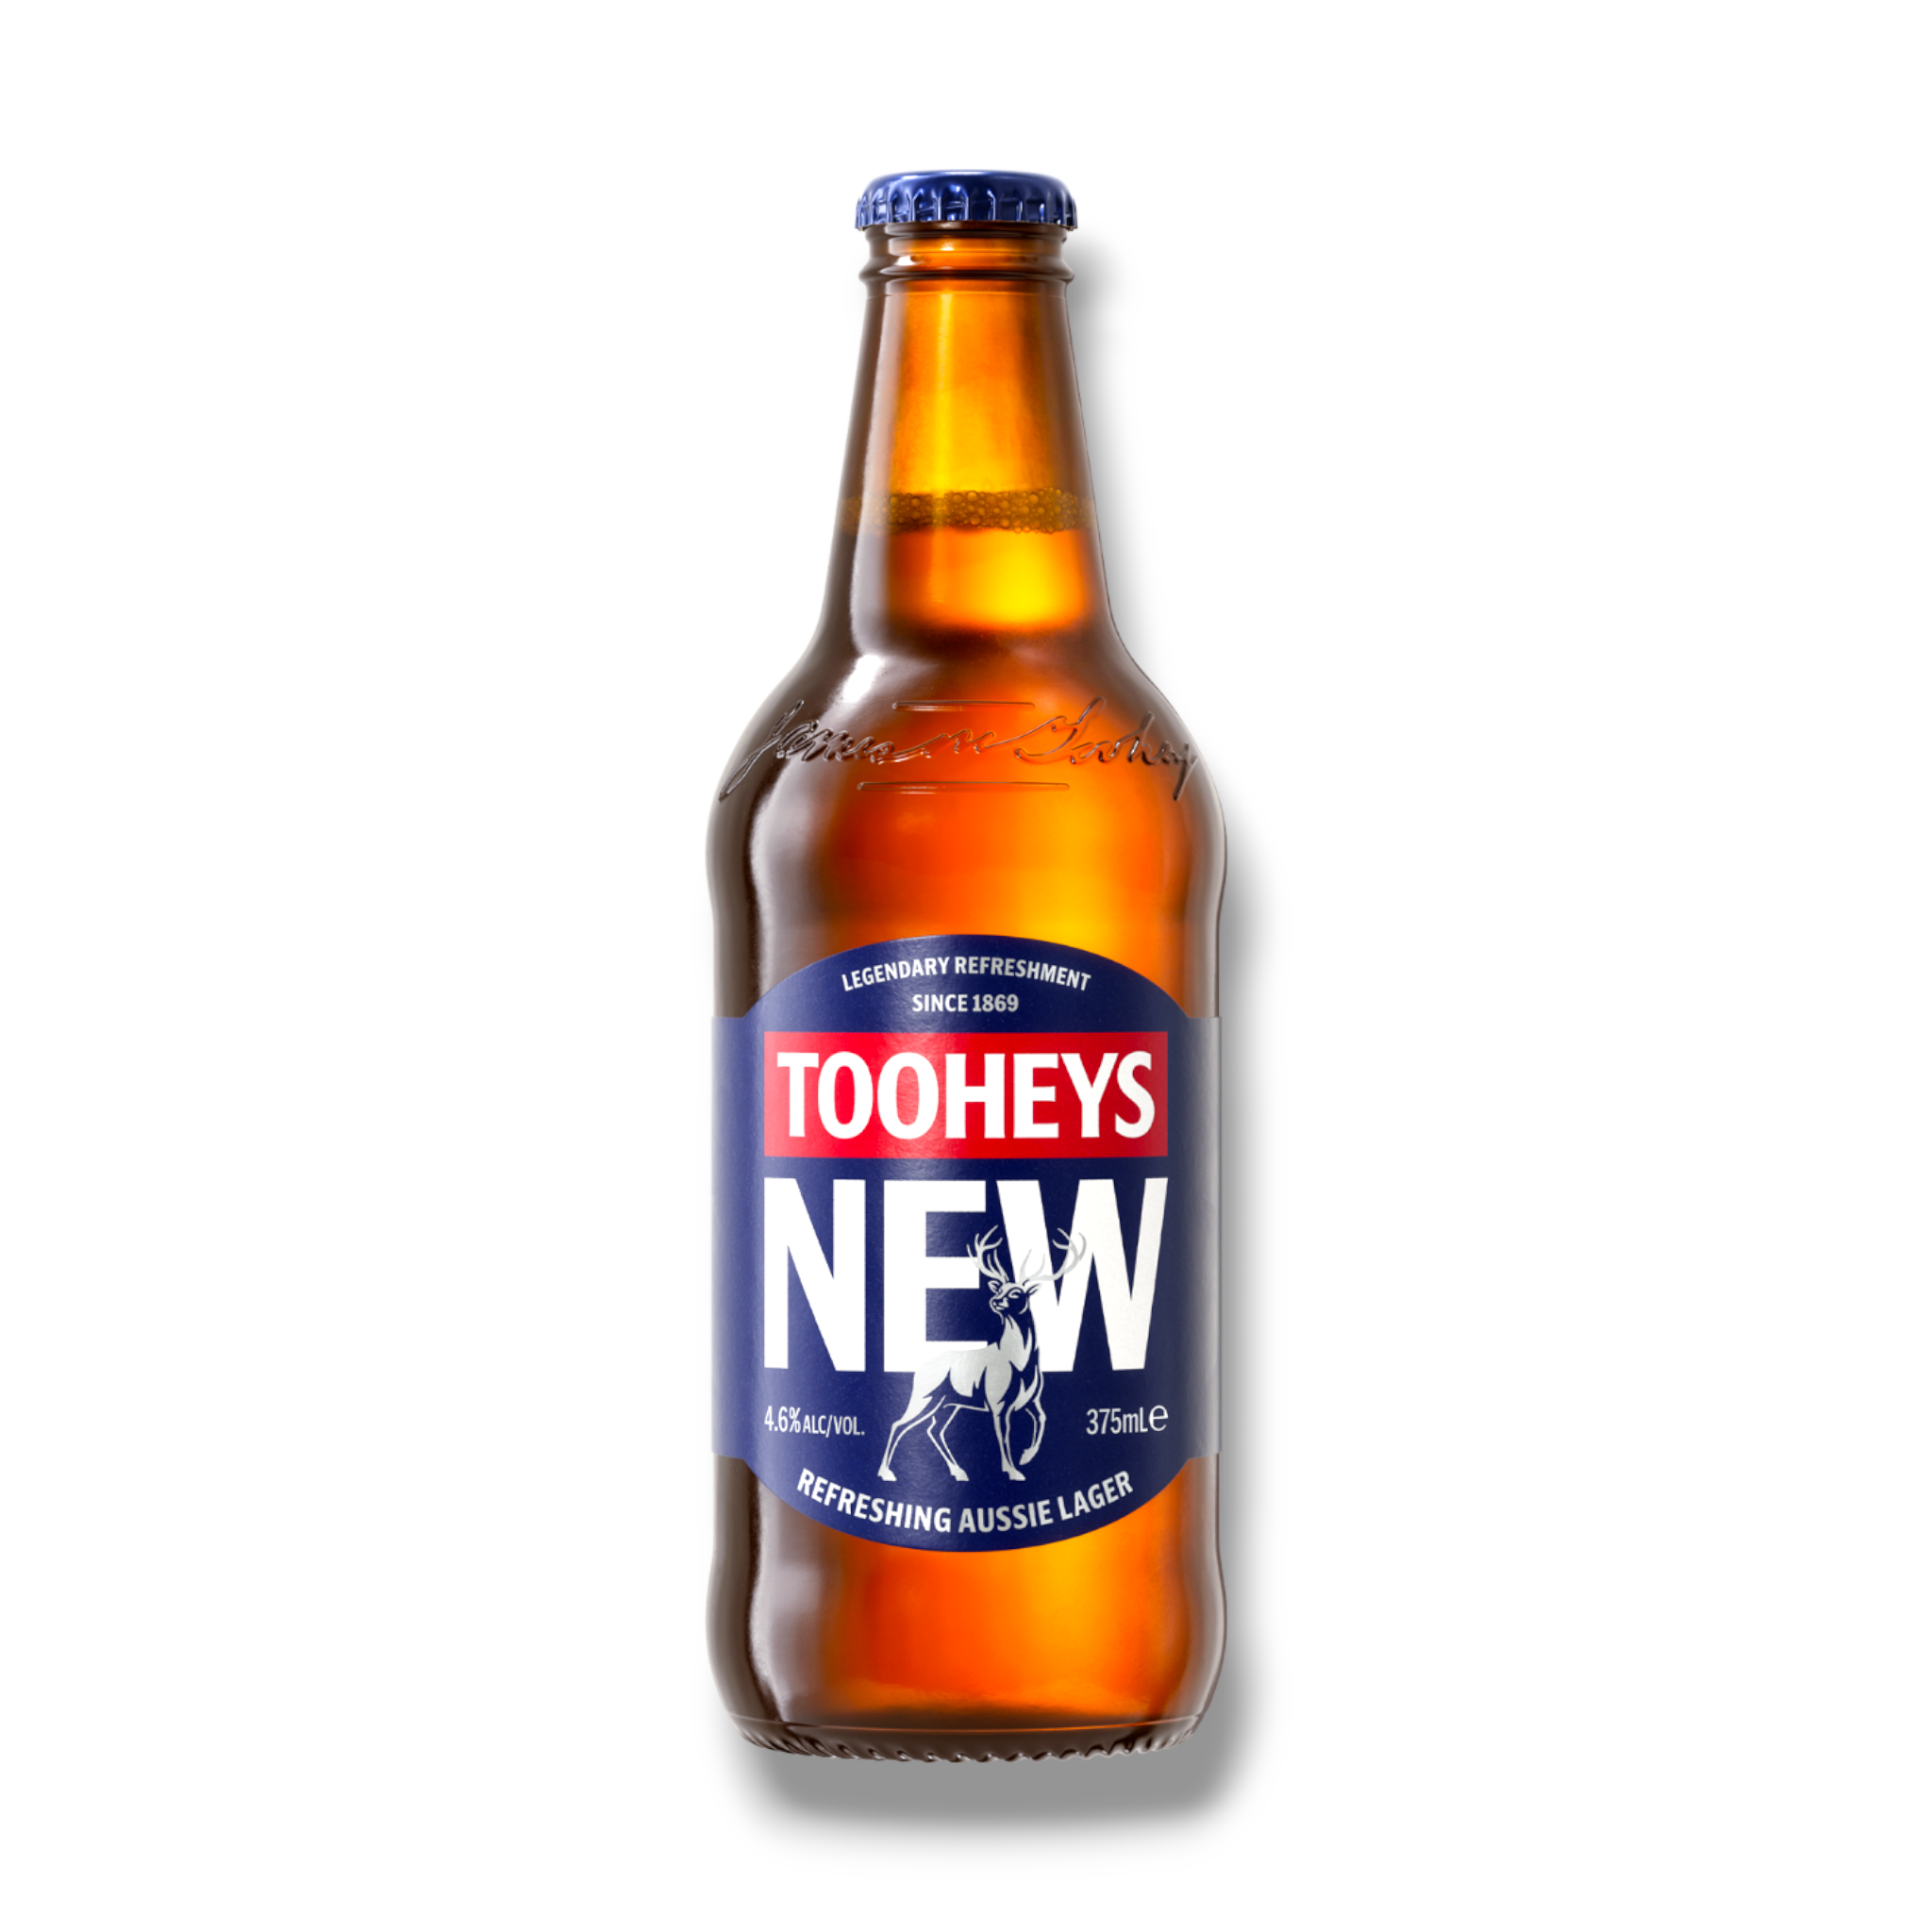 Tooheys New Lager 375ml- Australisches Lagerbier mit 4,6% Vol.